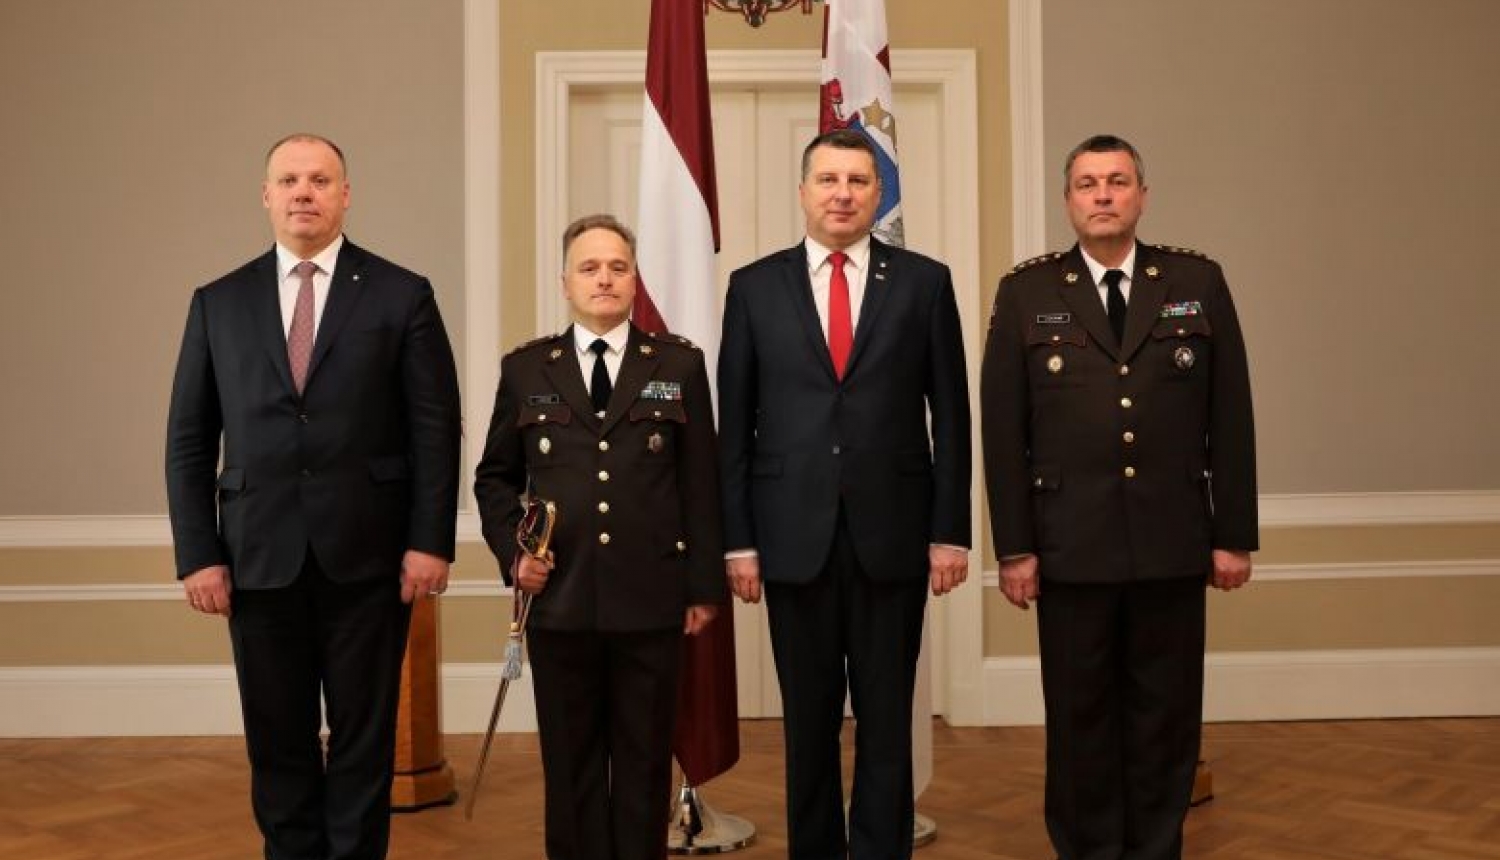 Valsts prezidents svinīgā ceremonijā Rīgas pilī pasniedz brigādes ģenerāļa pakāpi Imantam Ziediņam